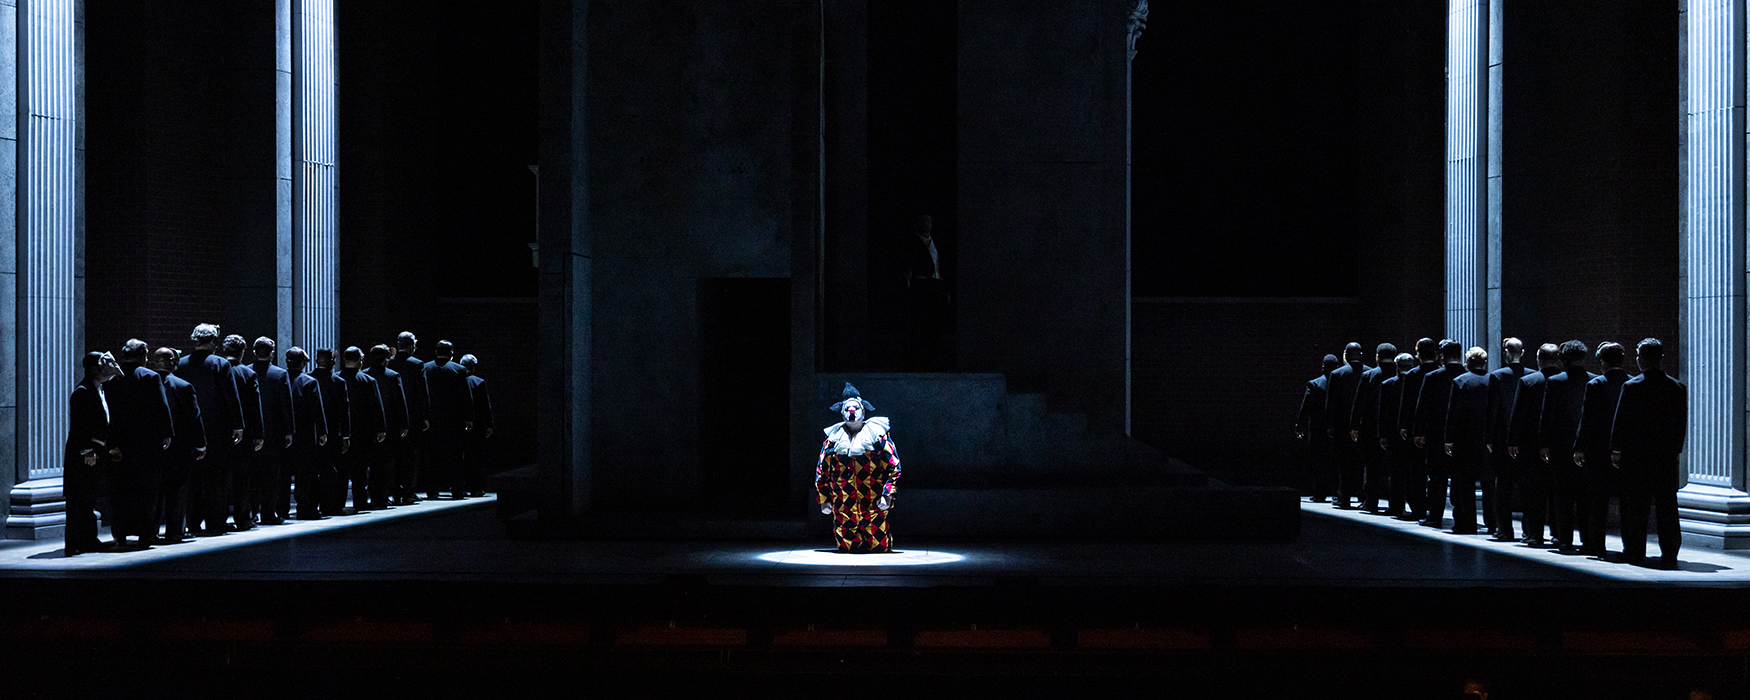 Rigoletto at The Dallas Opera